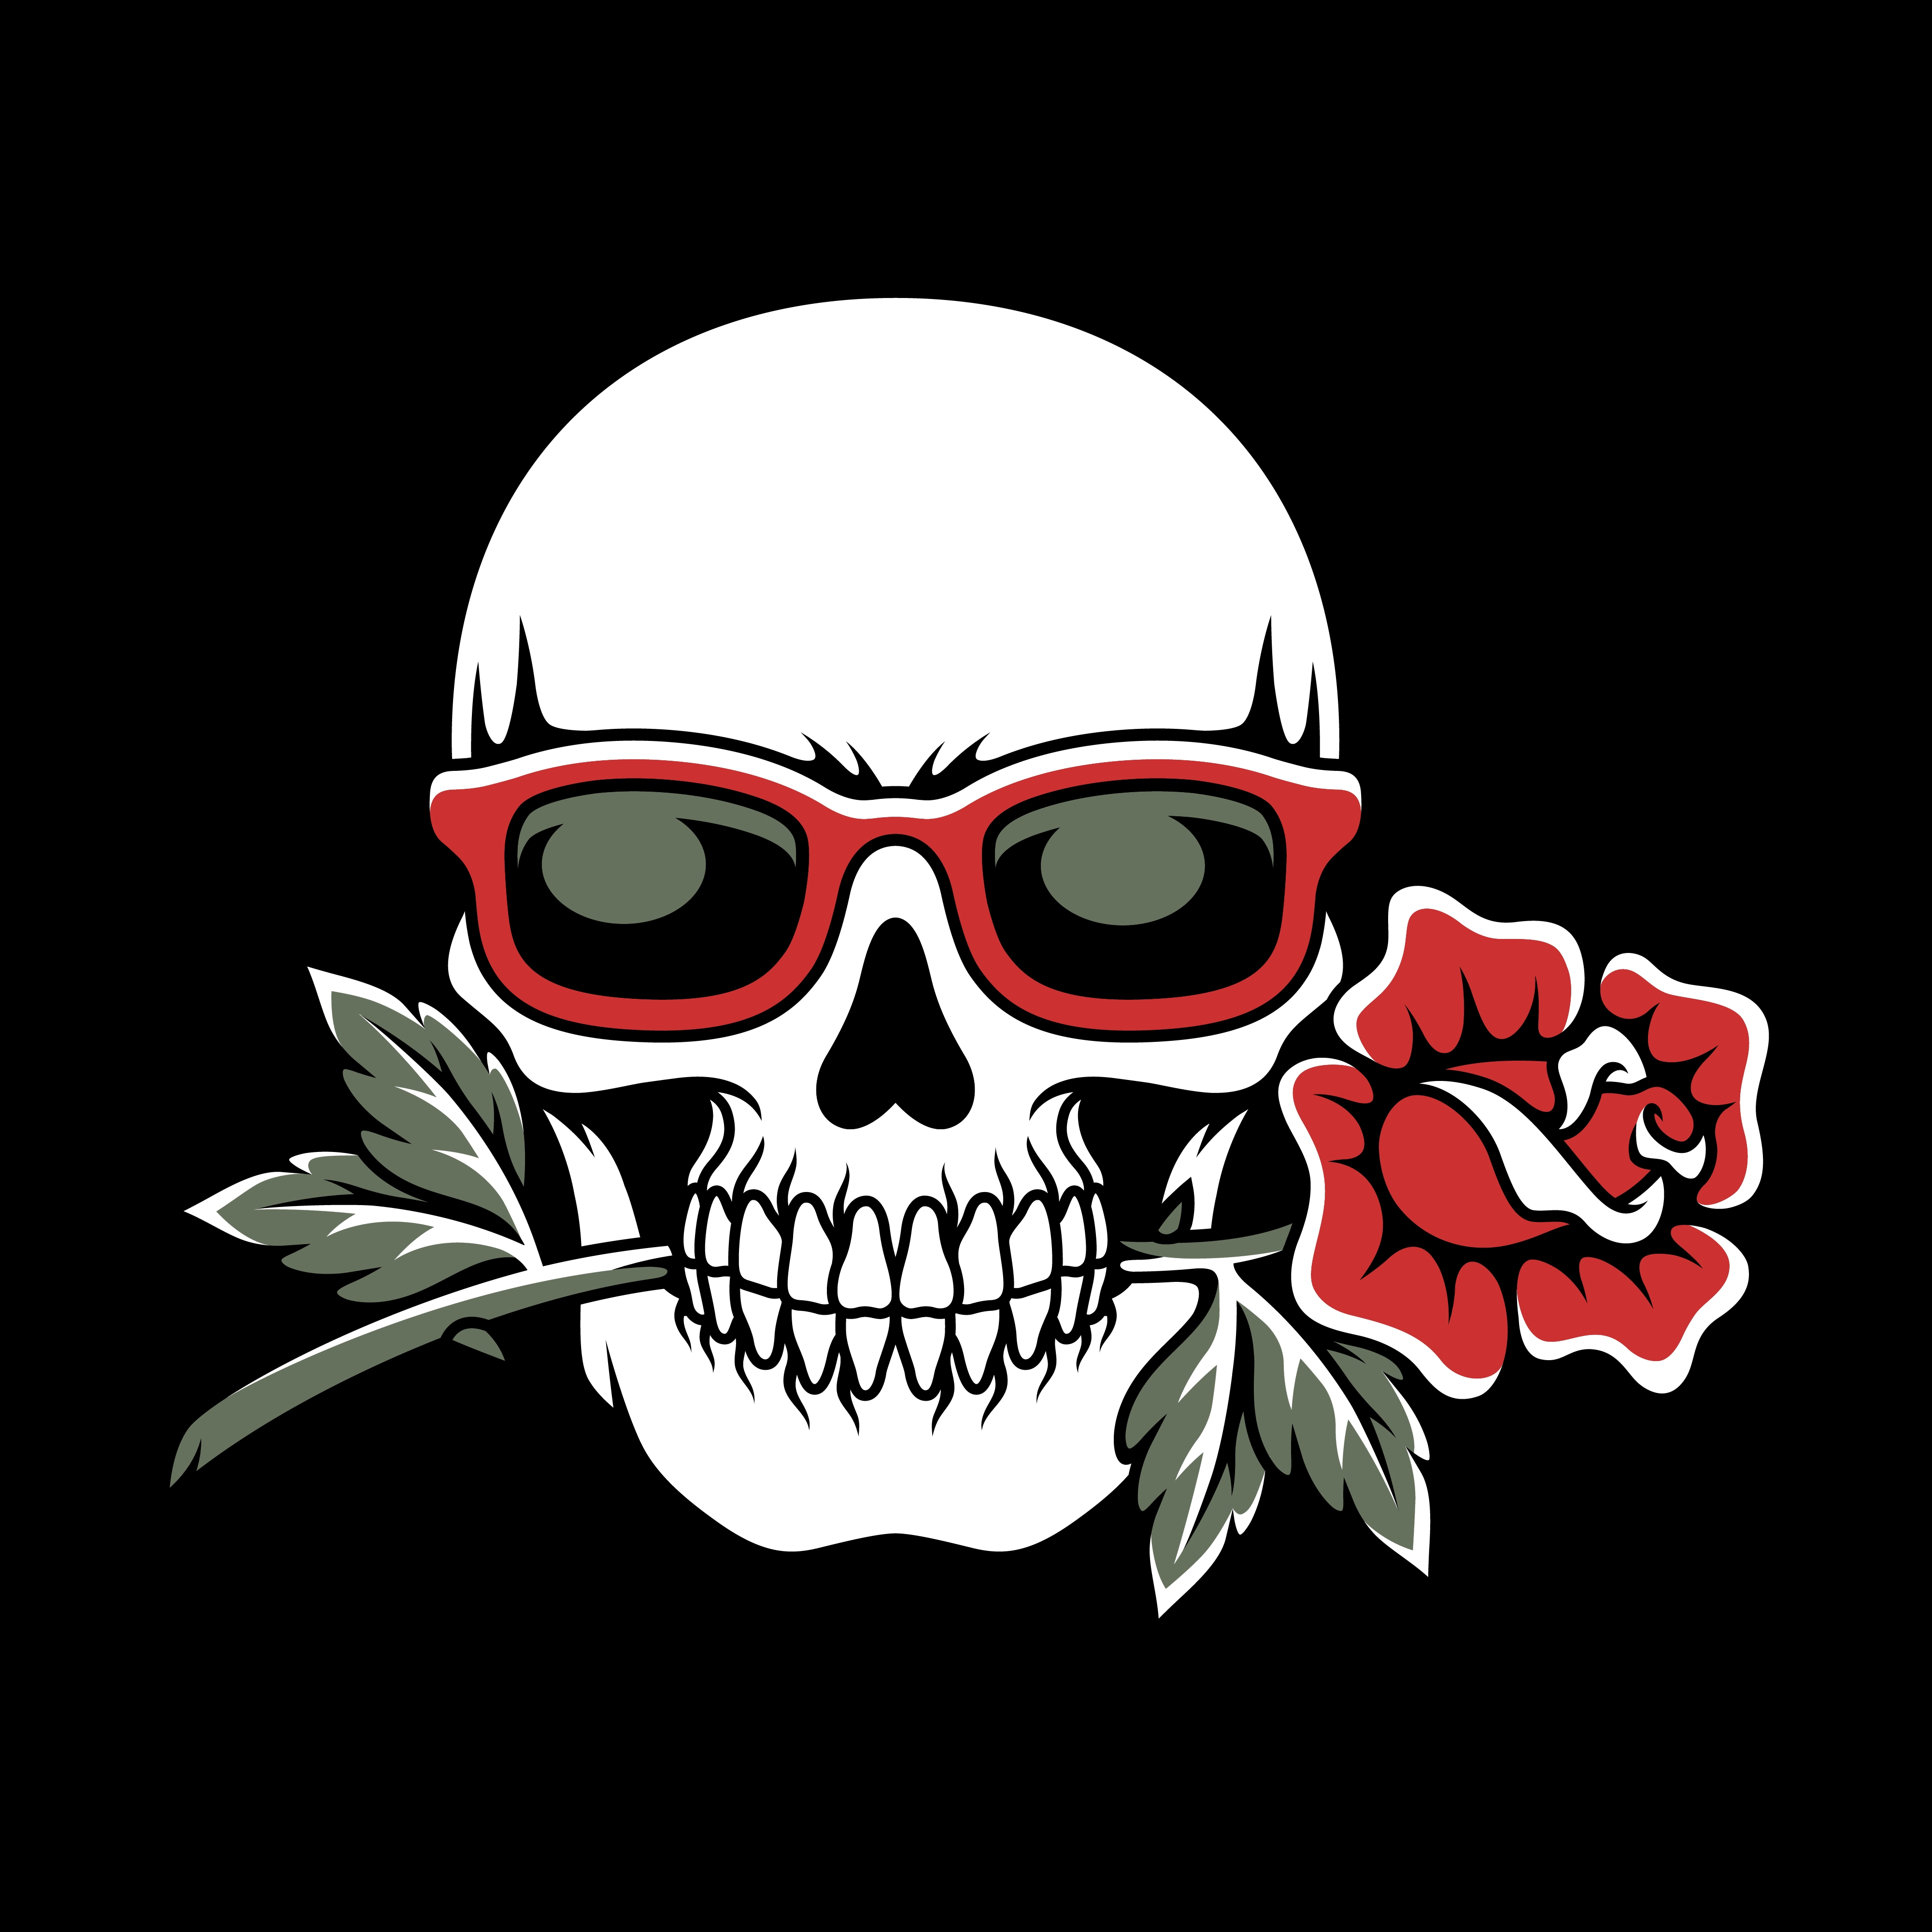 Skull Wearing Glasses Biting Rose